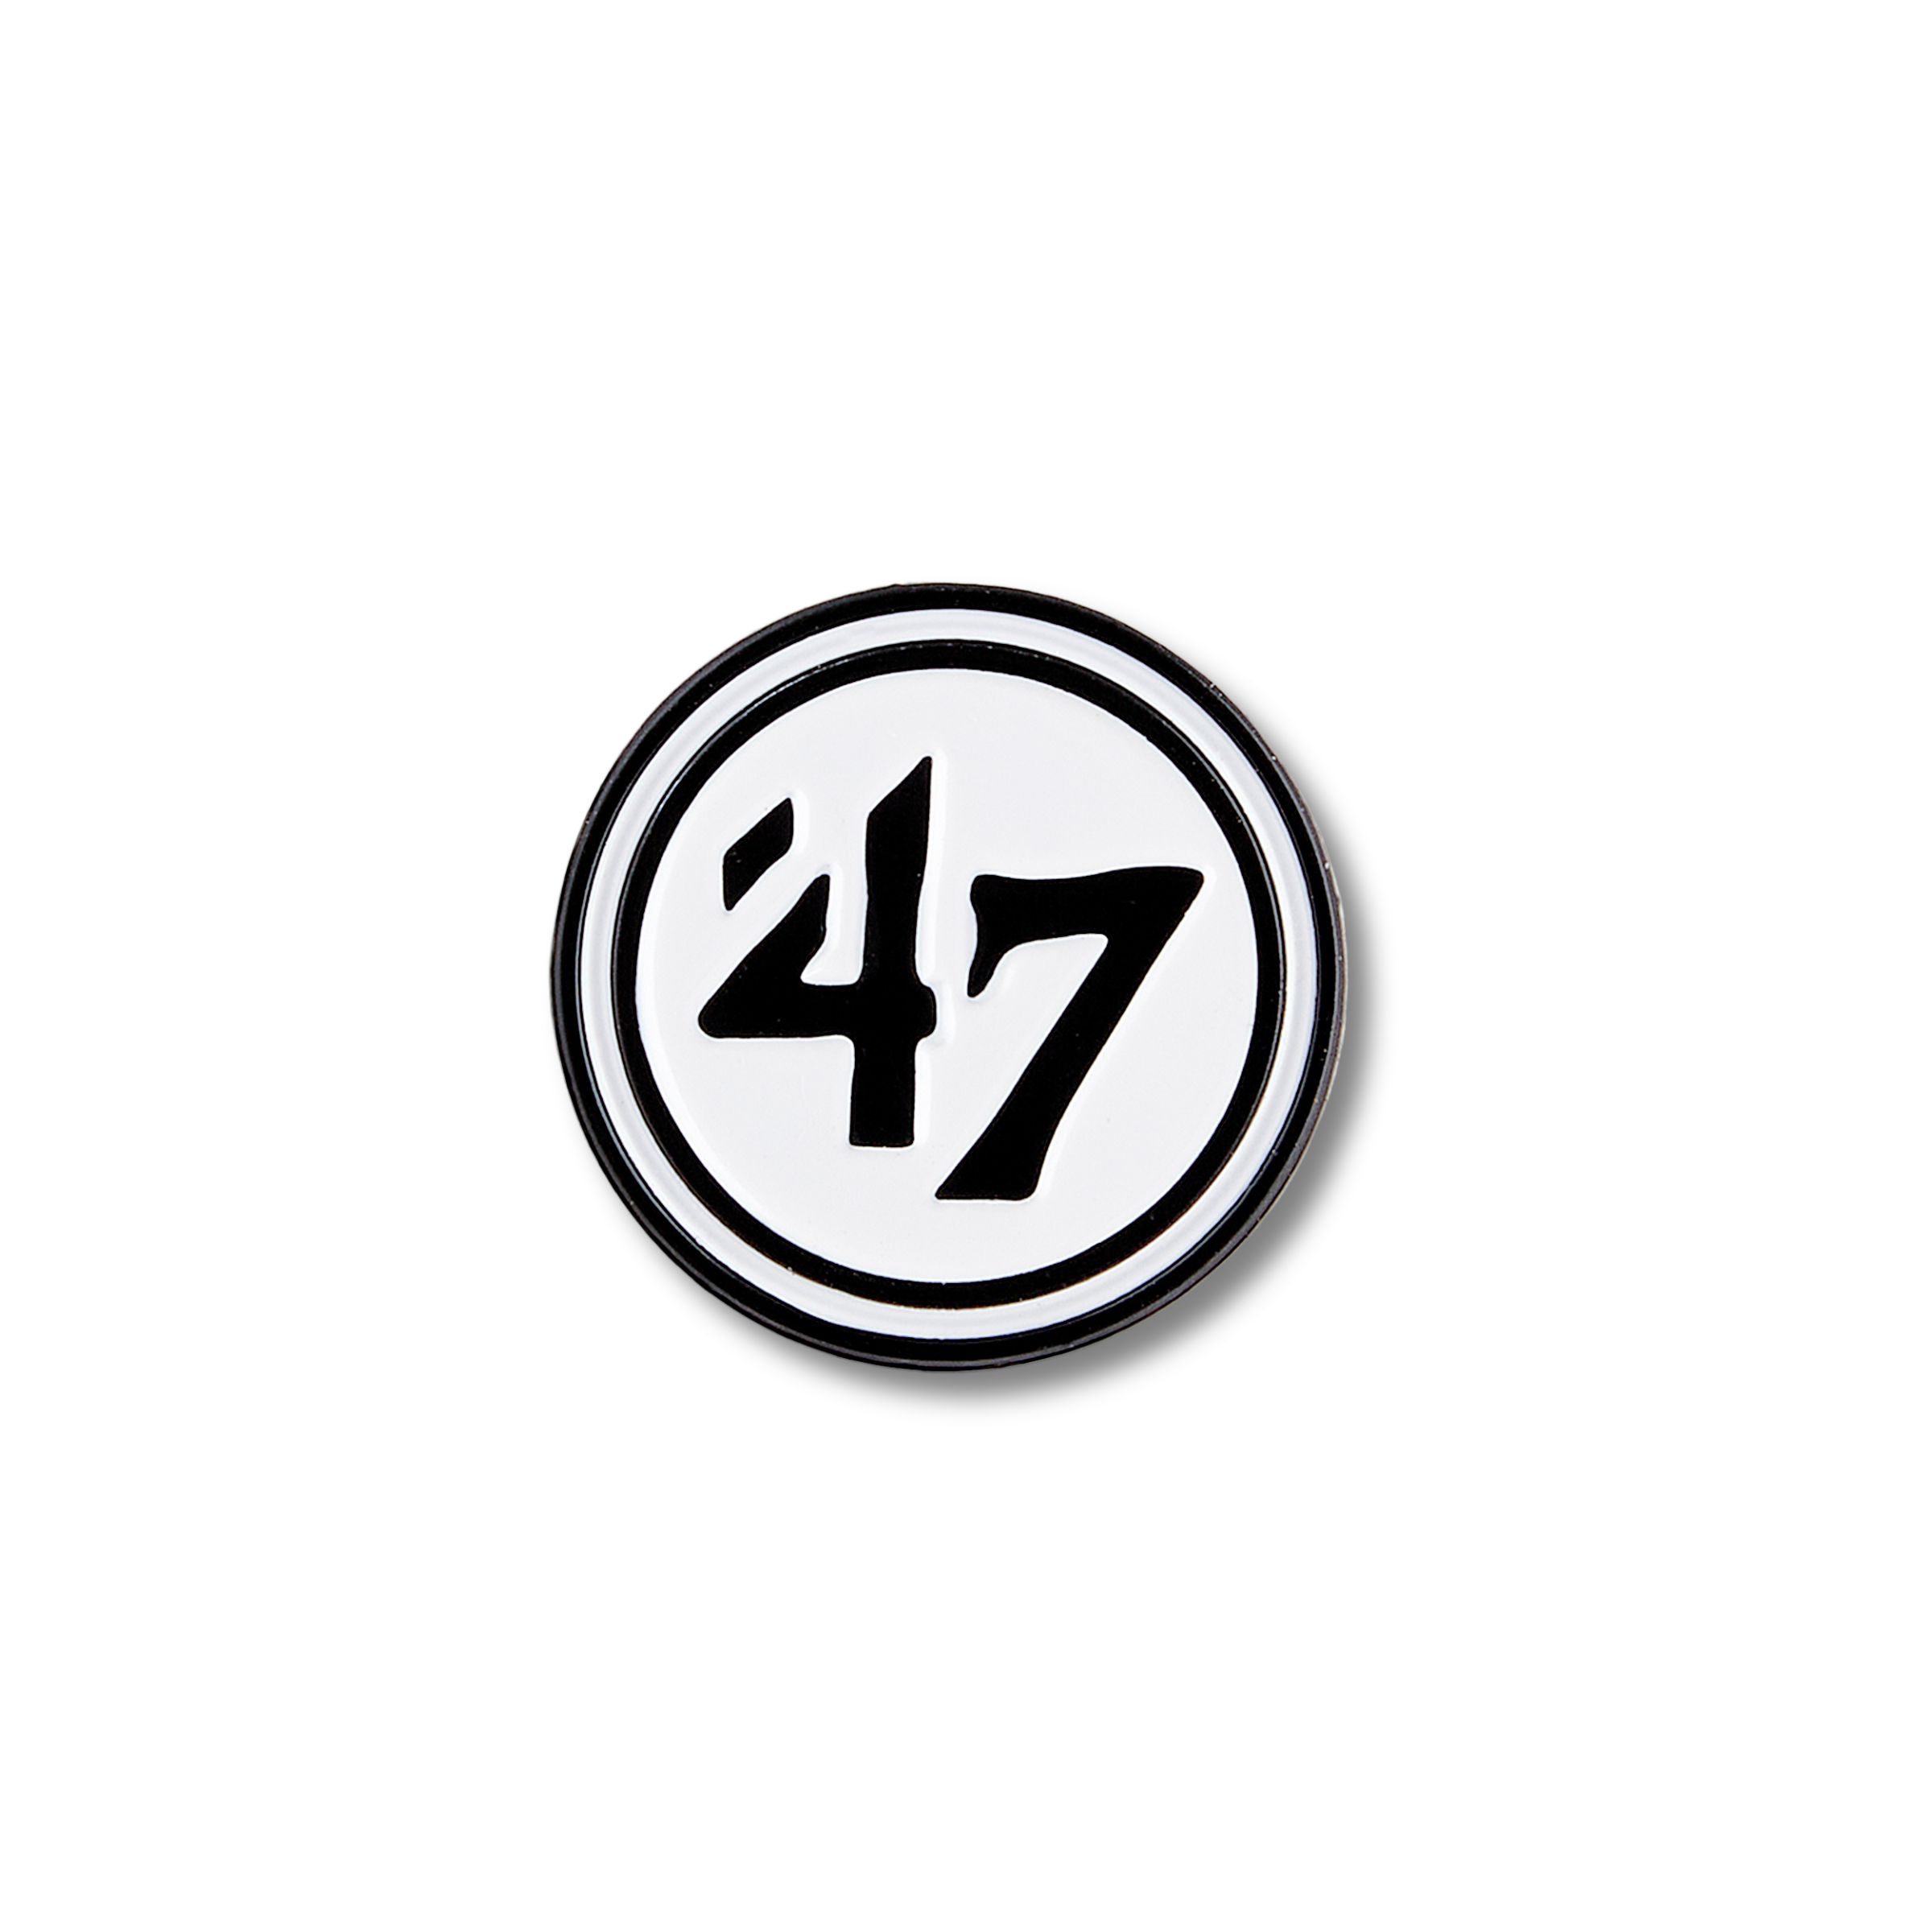 '47 Logo Pin